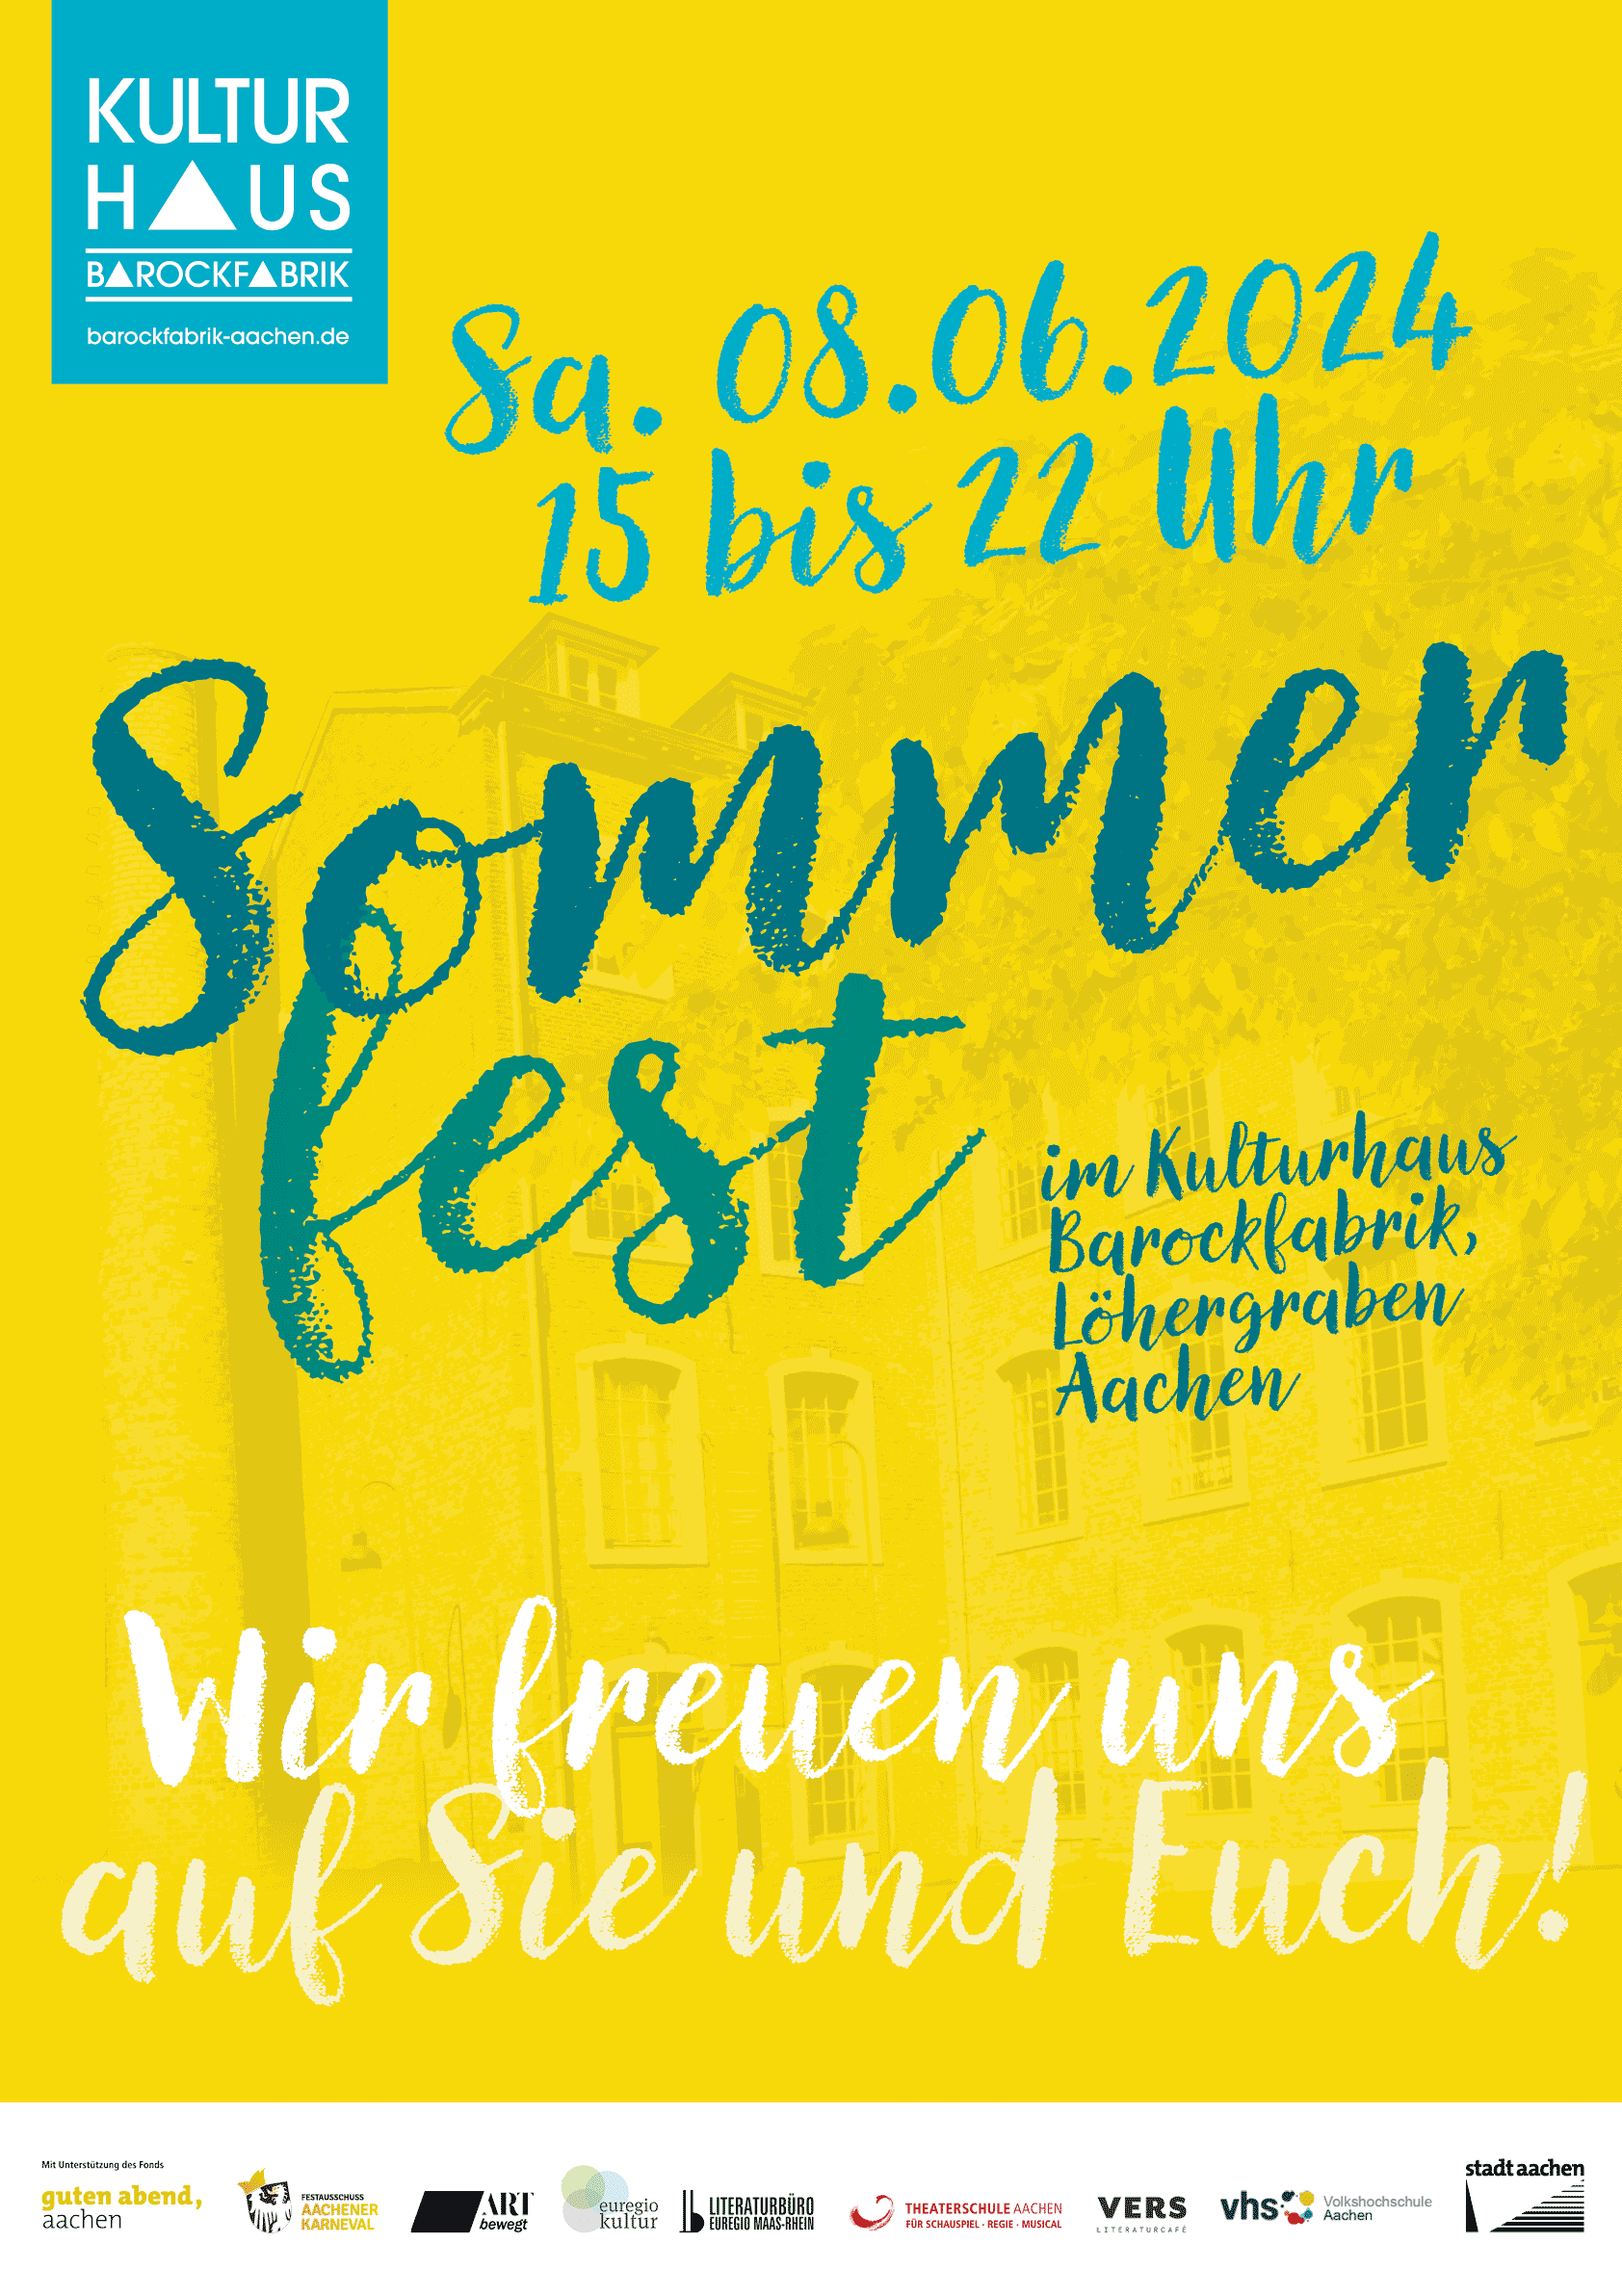 Das Plakat zum Sommerfest im Kulturhaus Barockfabrik am 08.06.2024 mit der Unterzeile: Wir freuen uns auf Sie und Euch!